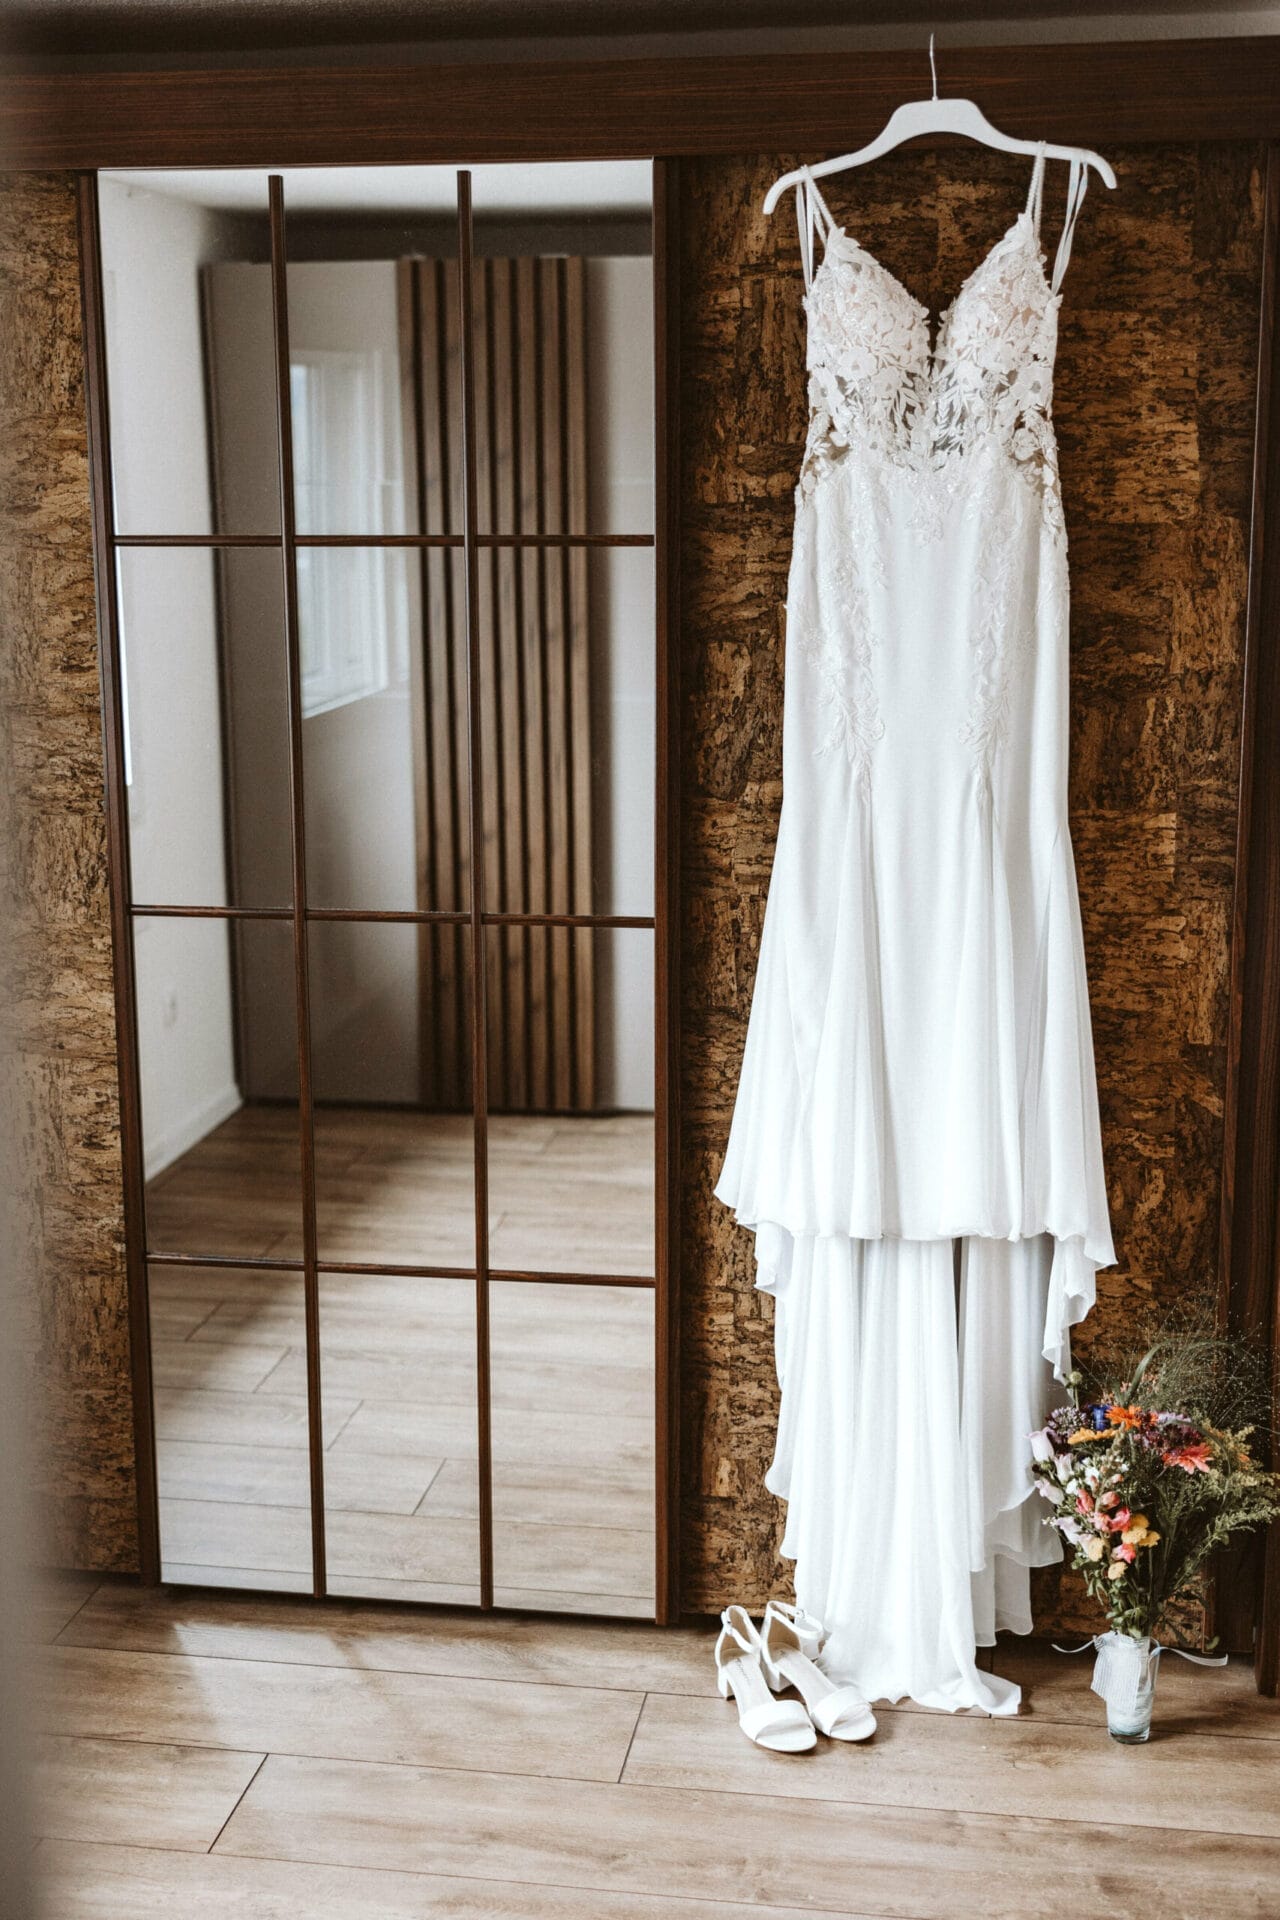 Hochzeit Heiraten Hochzeitsfotograf Dominik Neugebauer - Hochzeitskleid hängt auf einem weißen Kleiderbügel neben einem Spiegel. Unter dem Hochzeitskleid ist ein Blumenstrauß und Schuhe zu sehen.